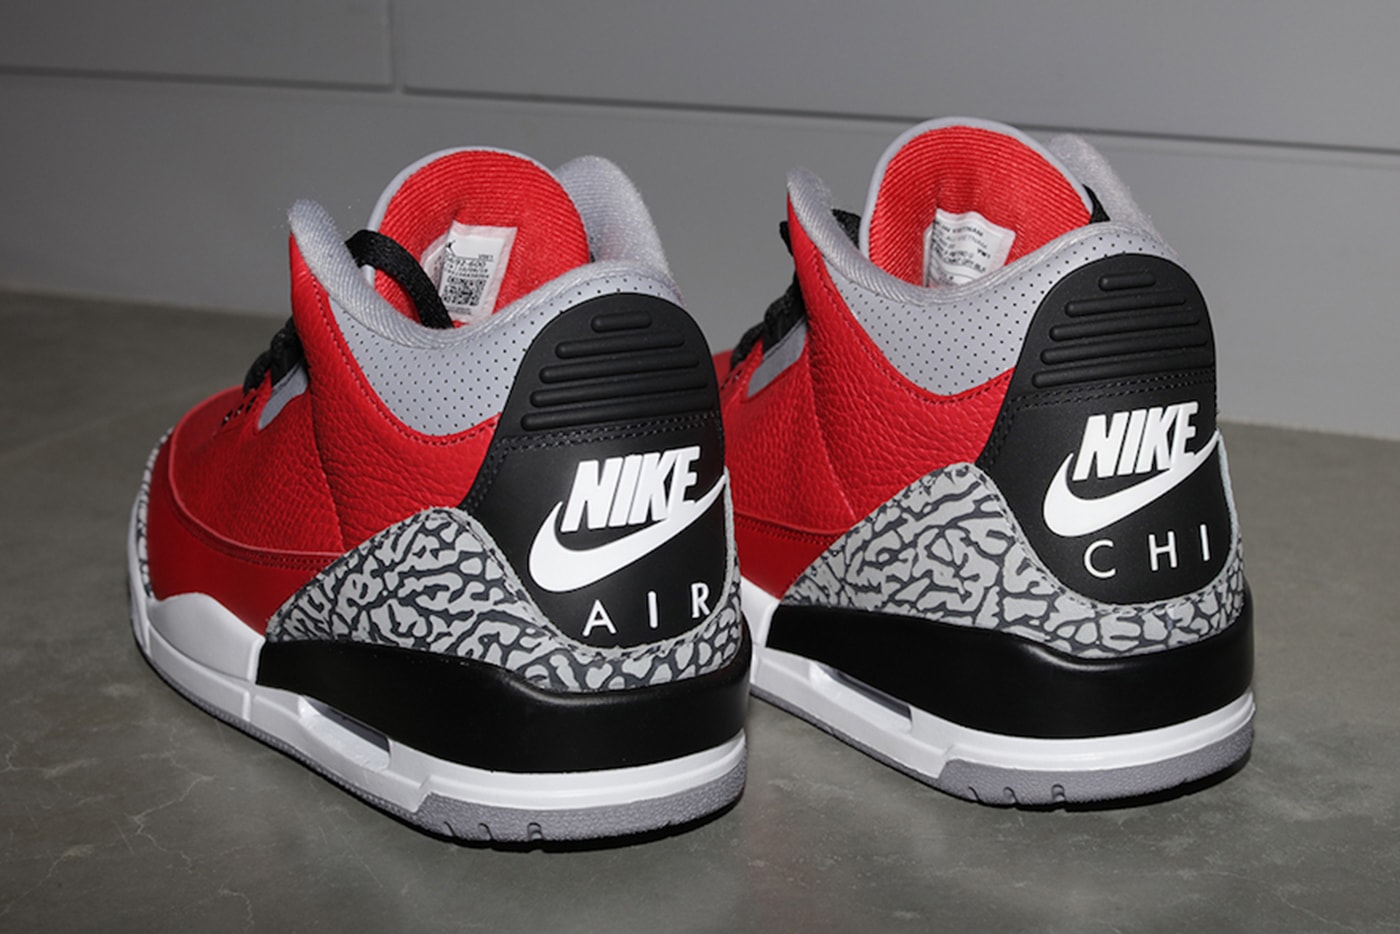 率先預覽 Air Jordan 3 Retro「Red Cement」配色鞋款